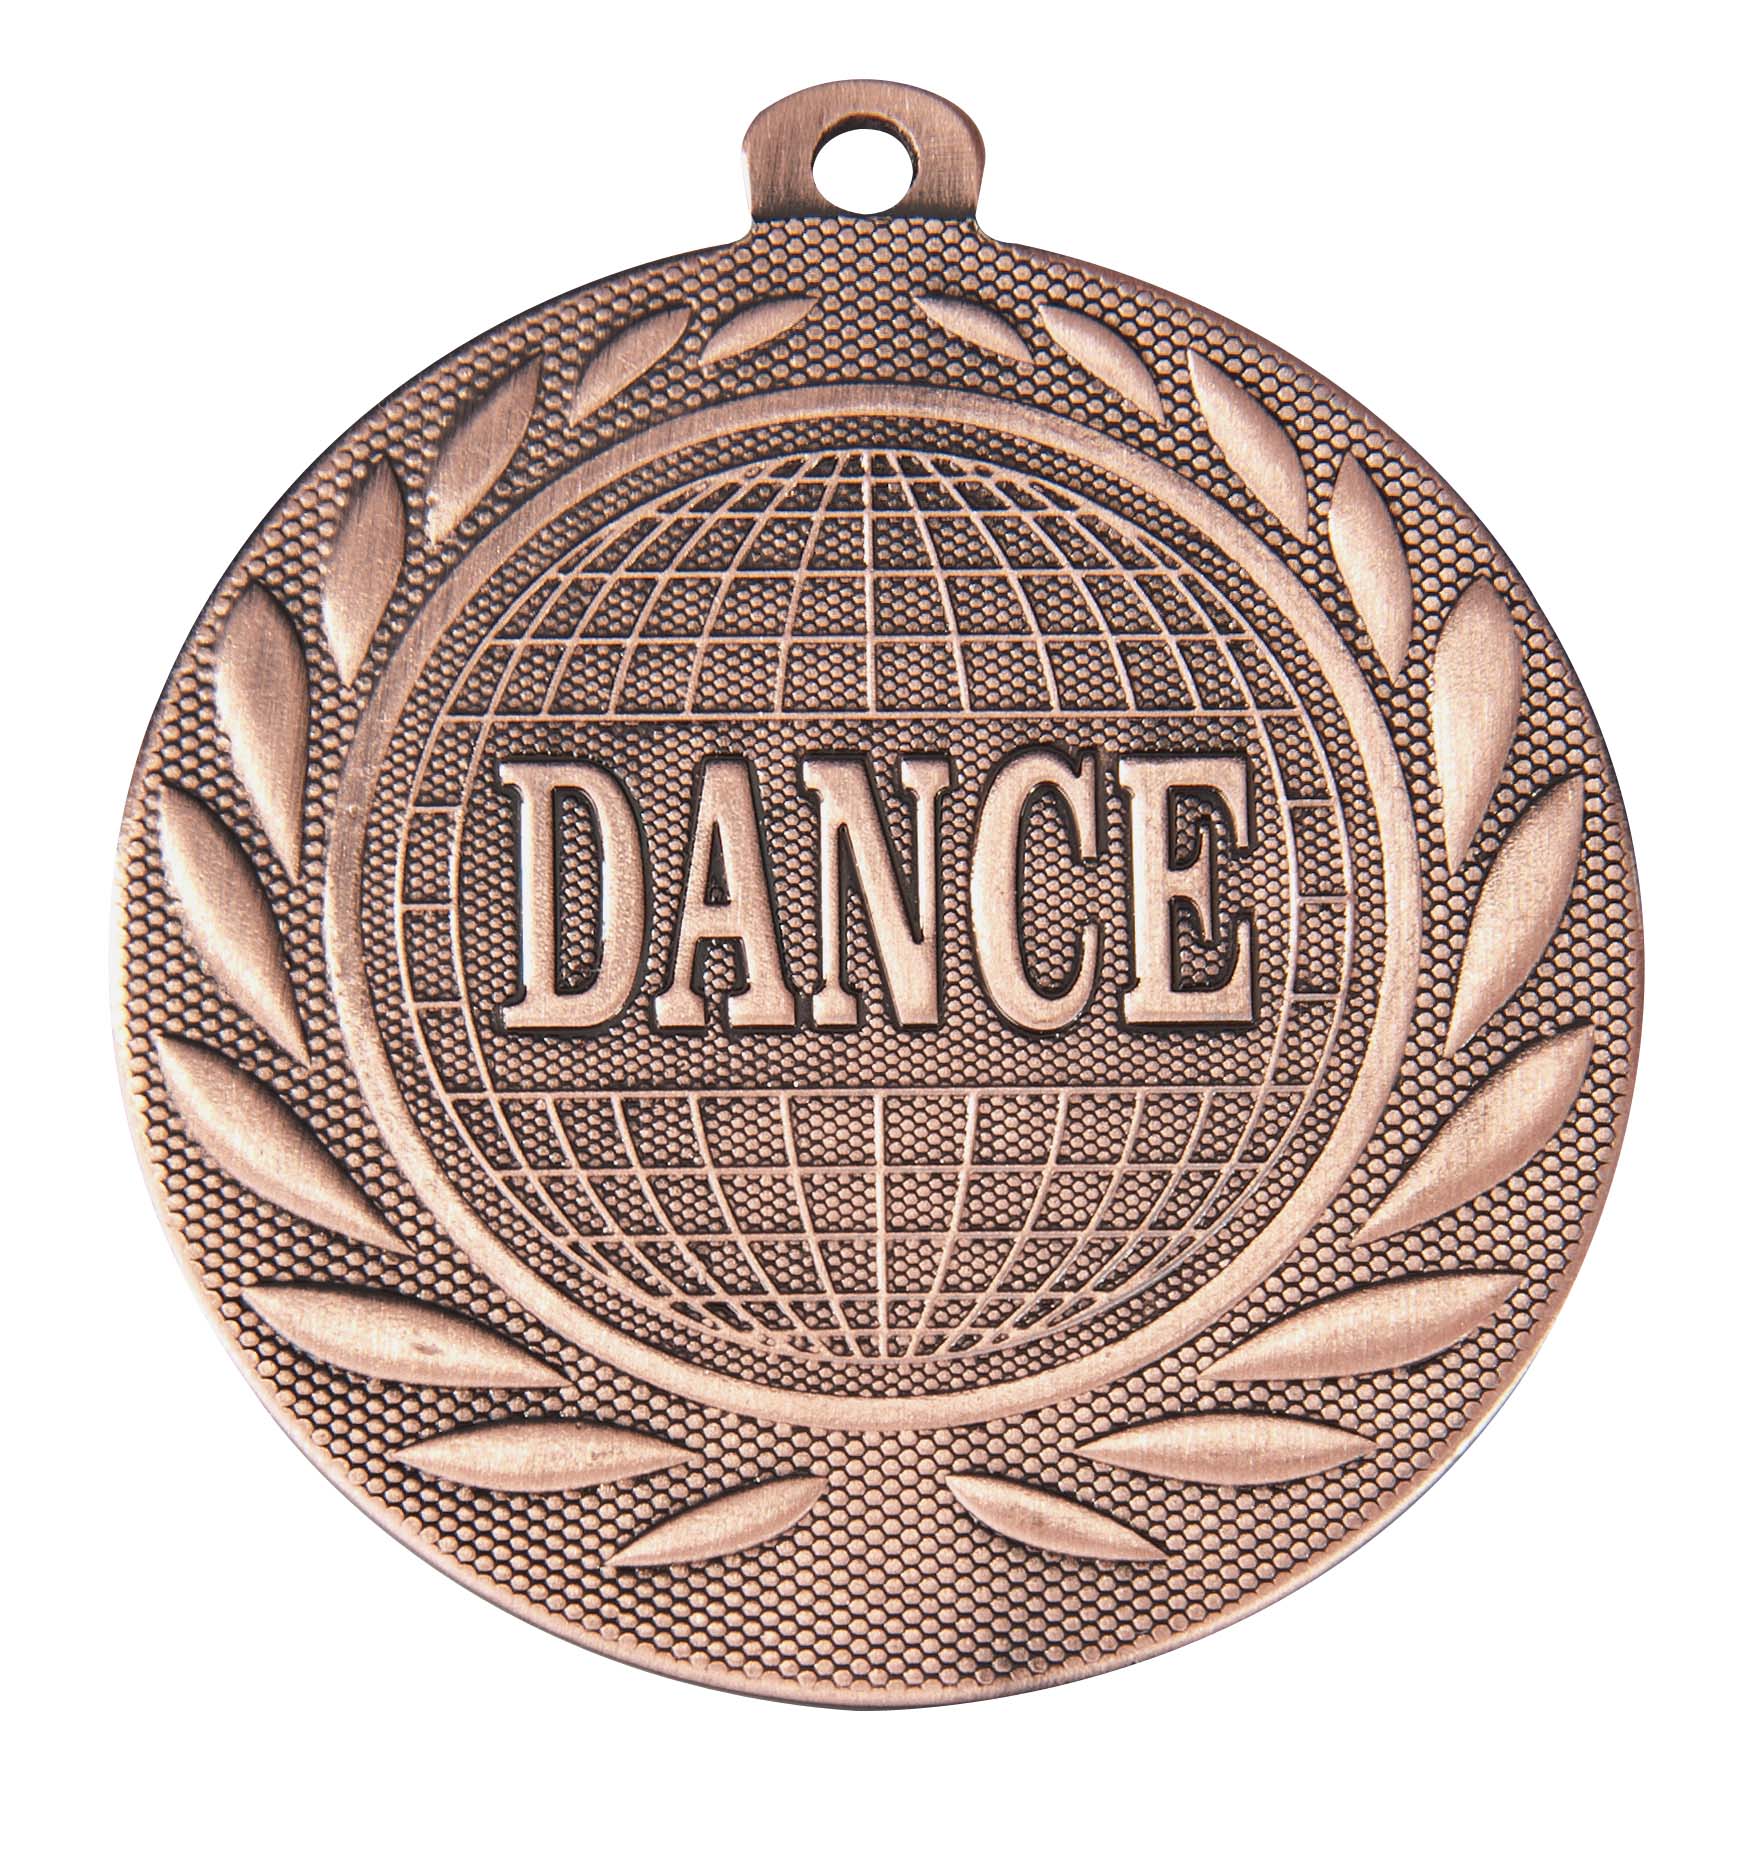 Dance-Medaille DI5000R inkl. Band und Beschriftung Bronze Fertig montiert gegen Aufpreis